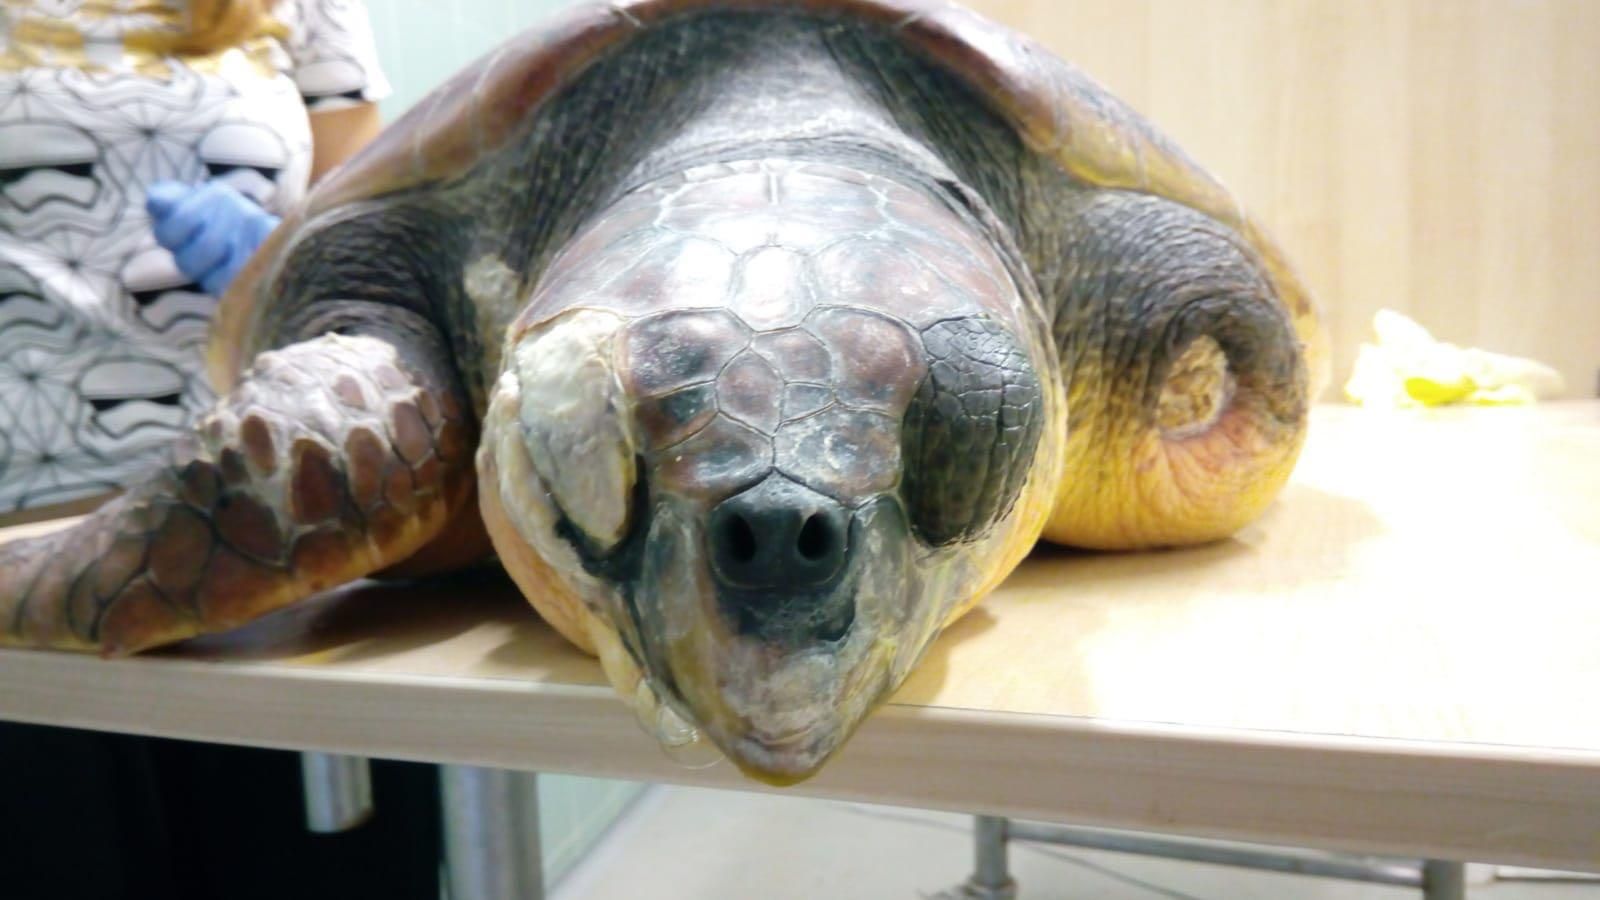 Wildlife Vets Help Save Turtles